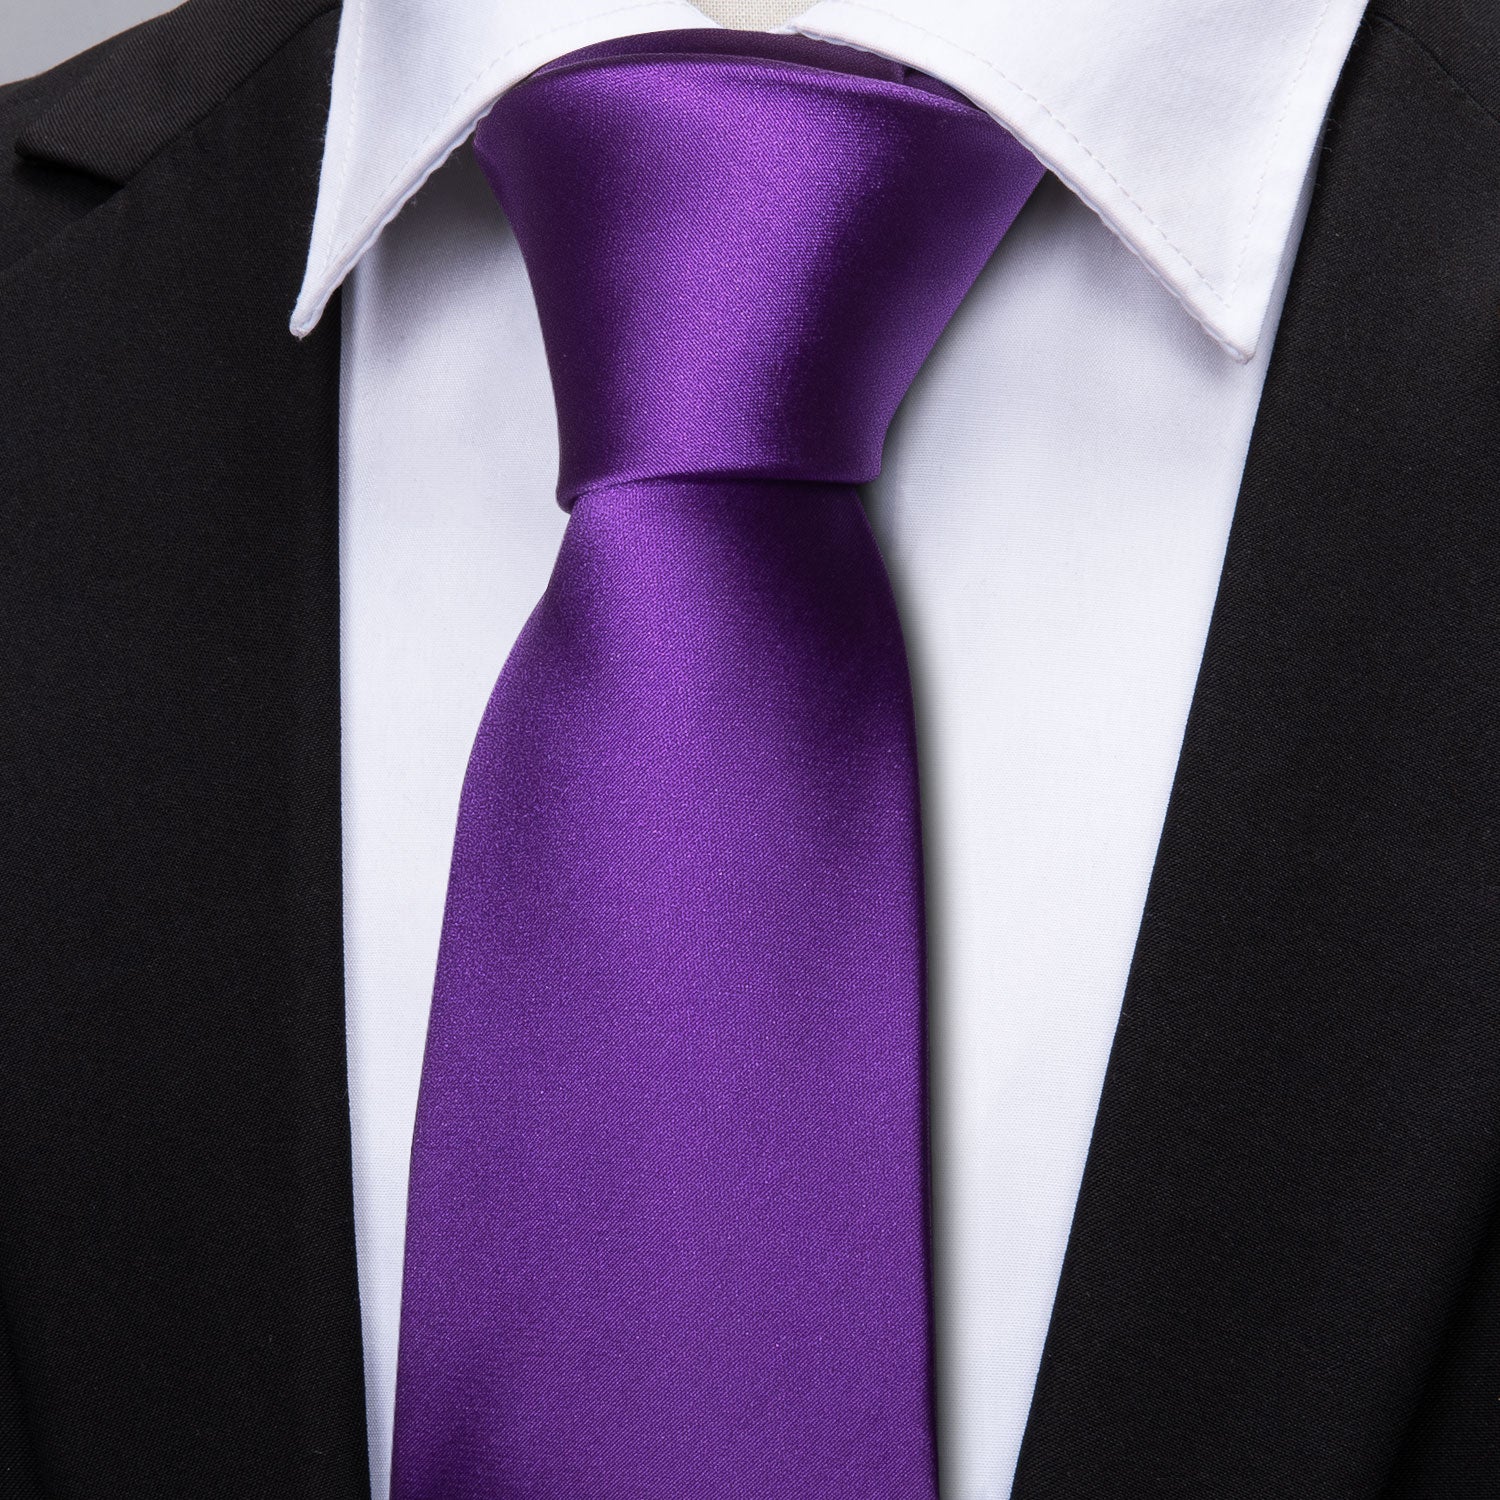 Barry.wang Solid Tie Deep Purple Tie Handkerchief Cufflinks Set